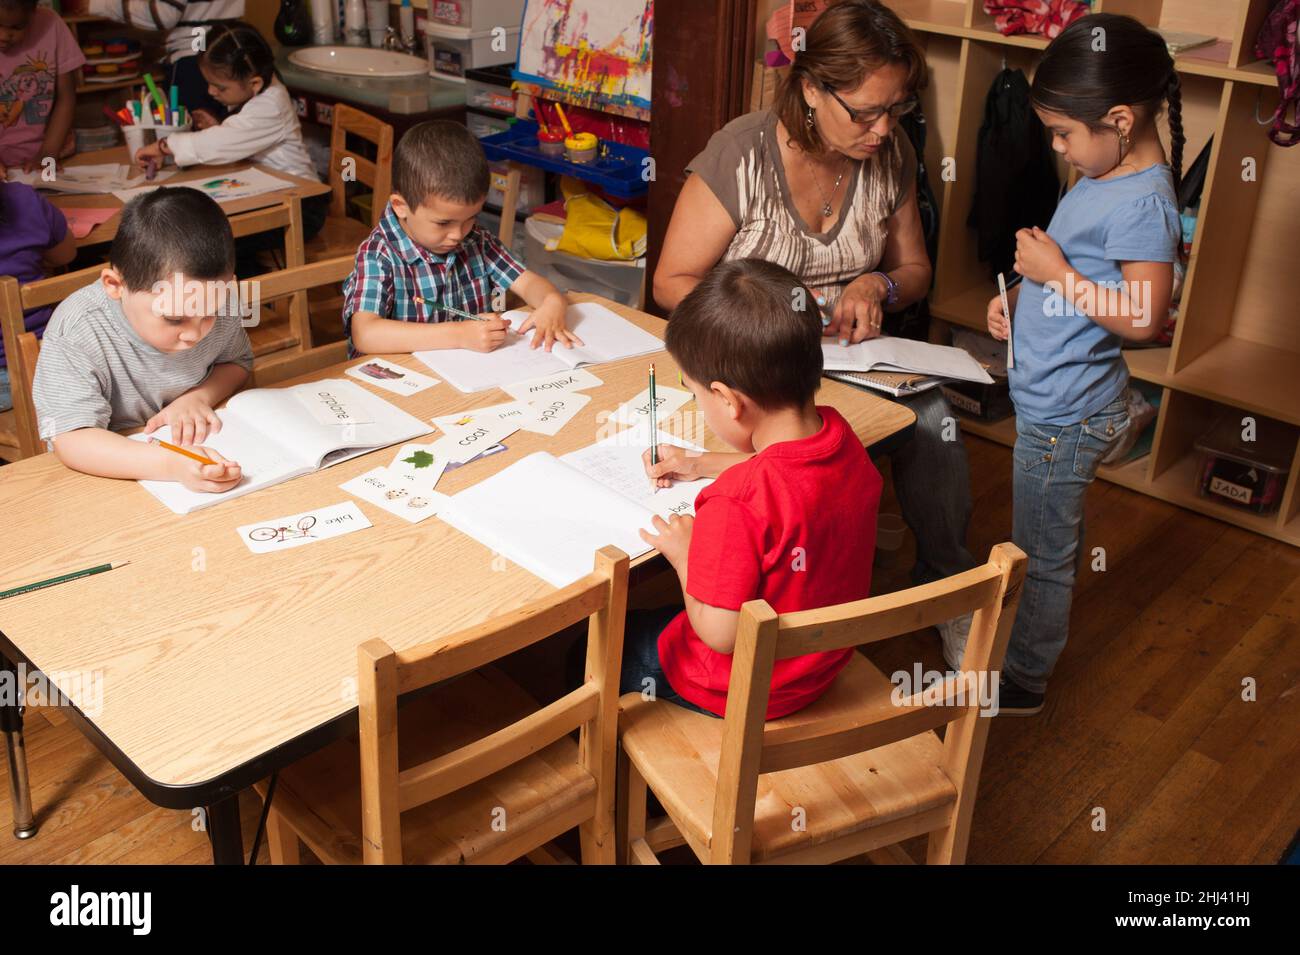 Educación Preescolar Head Start de 4-5 años de edad maestra mujer trabajando con niña mientras otros niños escriben en revistas con lápices Foto de stock